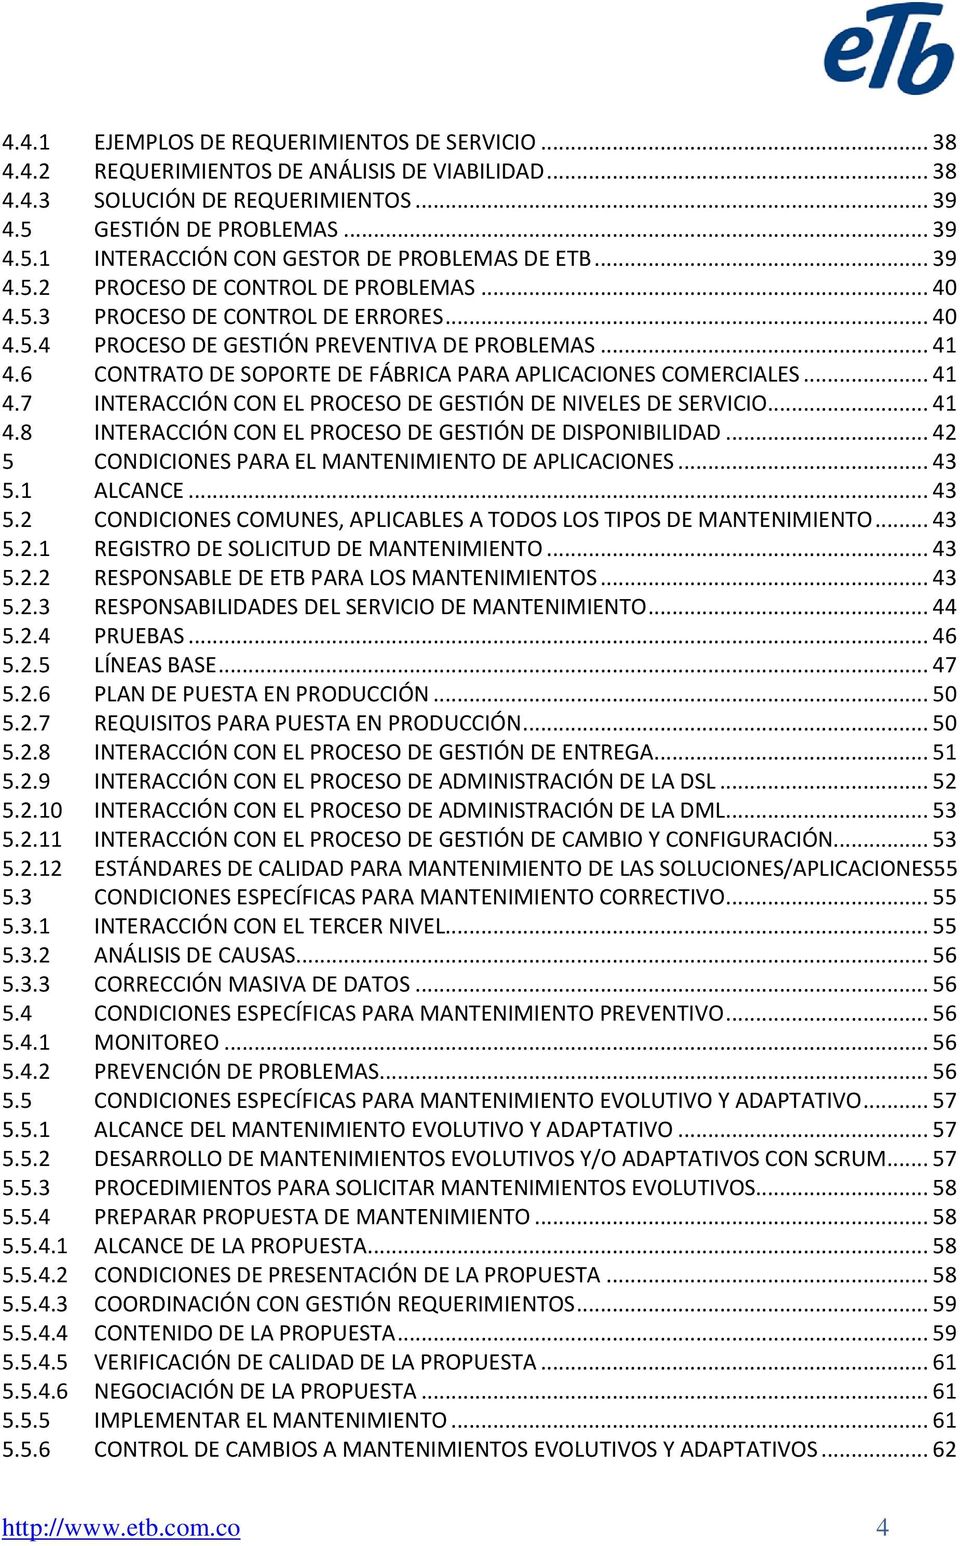 6 CONTRATO DE SOPORTE DE FÁBRICA PARA APLICACIONES COMERCIALES... 41 4.7 INTERACCIÓN CON EL PROCESO DE GESTIÓN DE NIVELES DE SERVICIO... 41 4.8 INTERACCIÓN CON EL PROCESO DE GESTIÓN DE DISPONIBILIDAD.